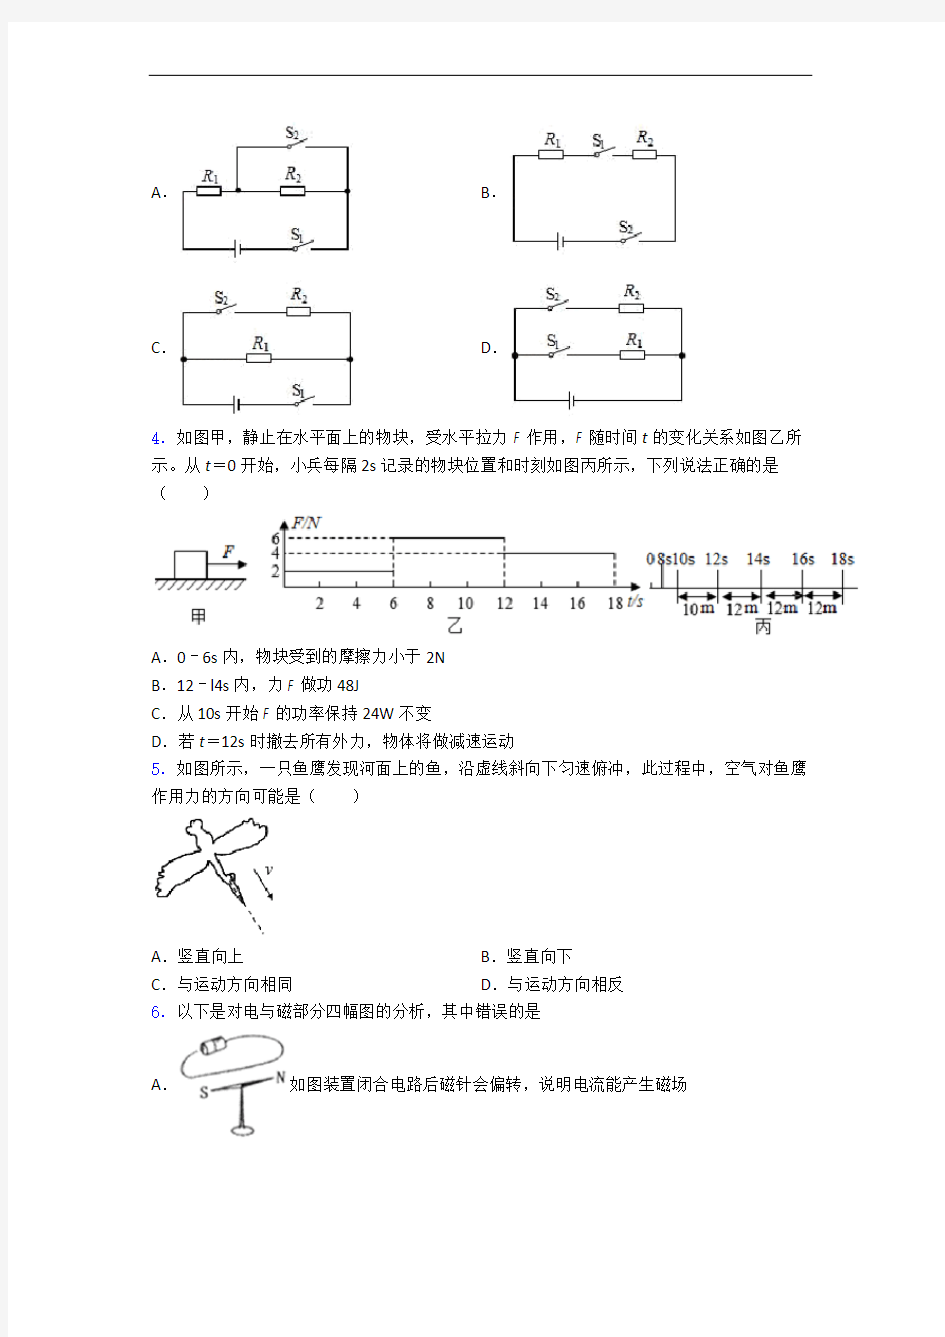 河南省安阳市二中新学高一分班考试物理试卷